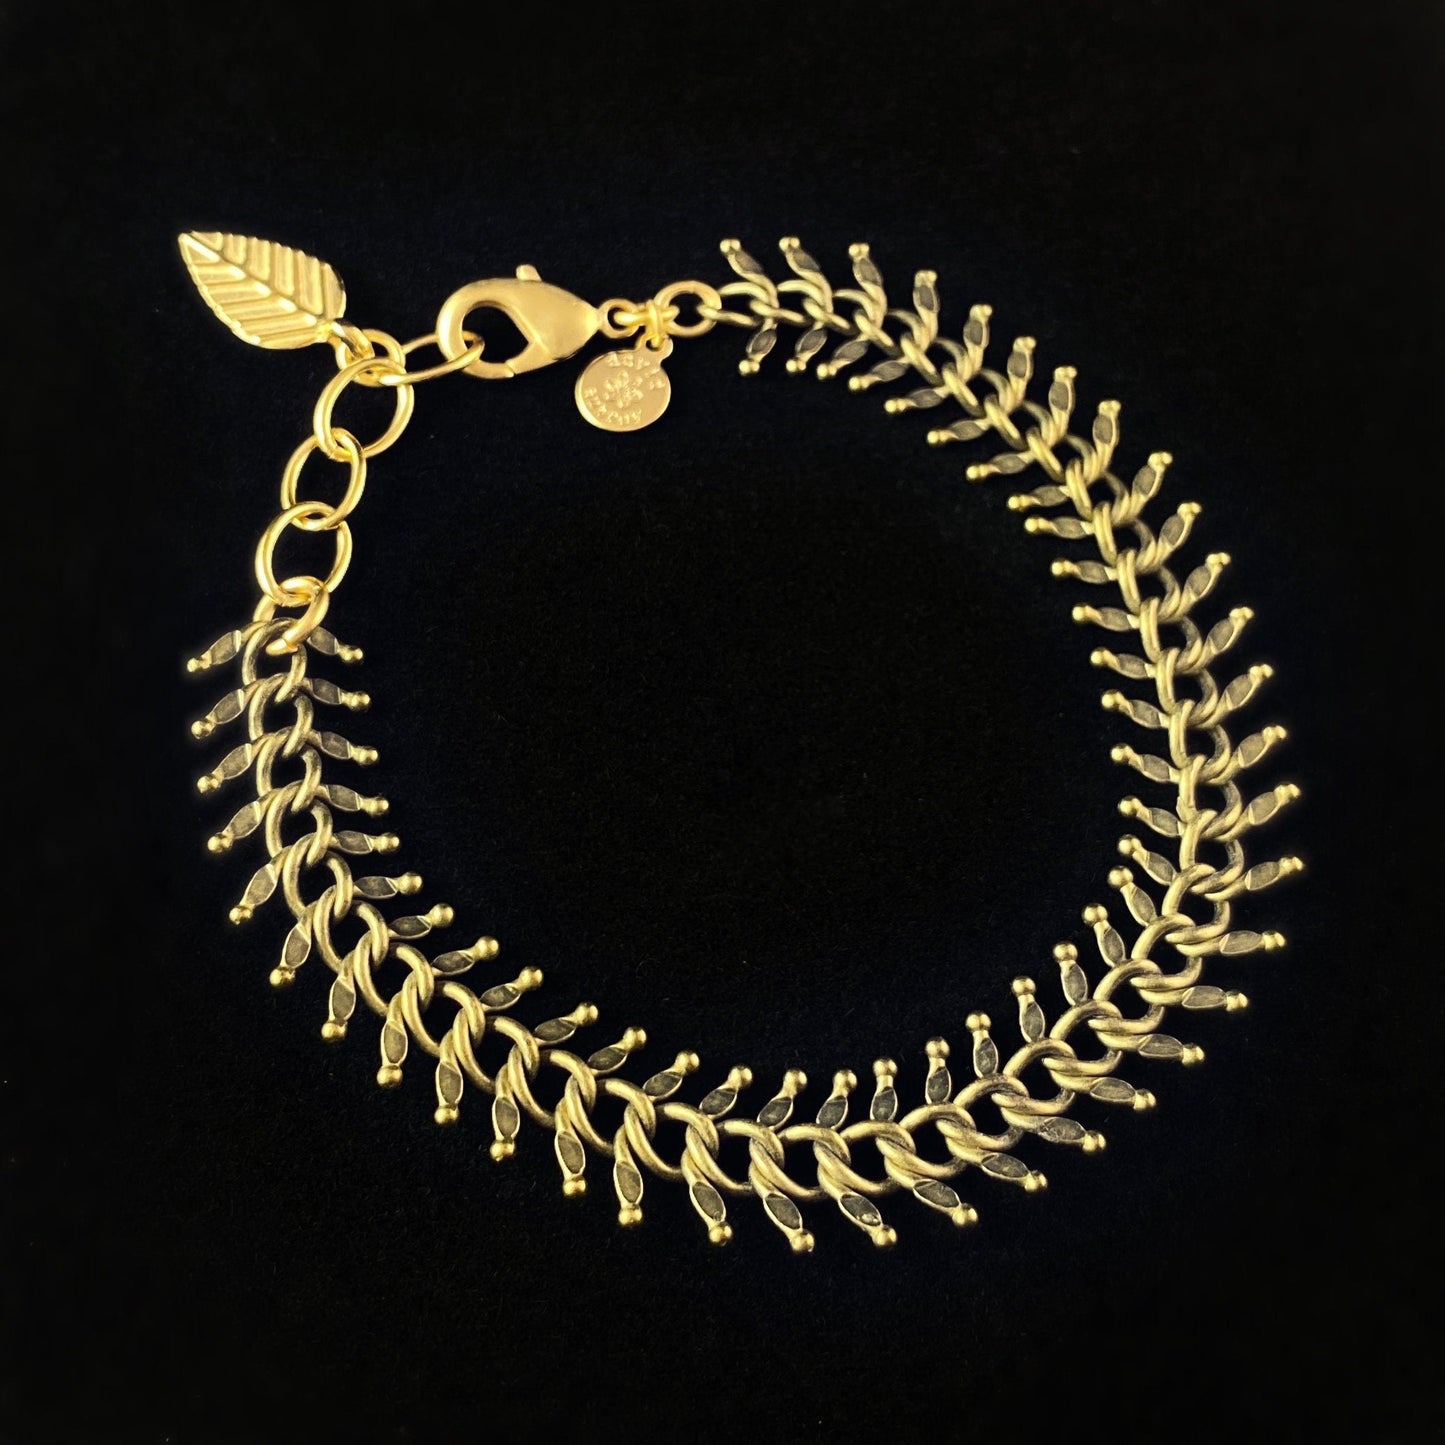 Gold Fishbone Chain Geometric Art Deco Style Bracelet - Oxidized Brass - David Aubrey Jewelry